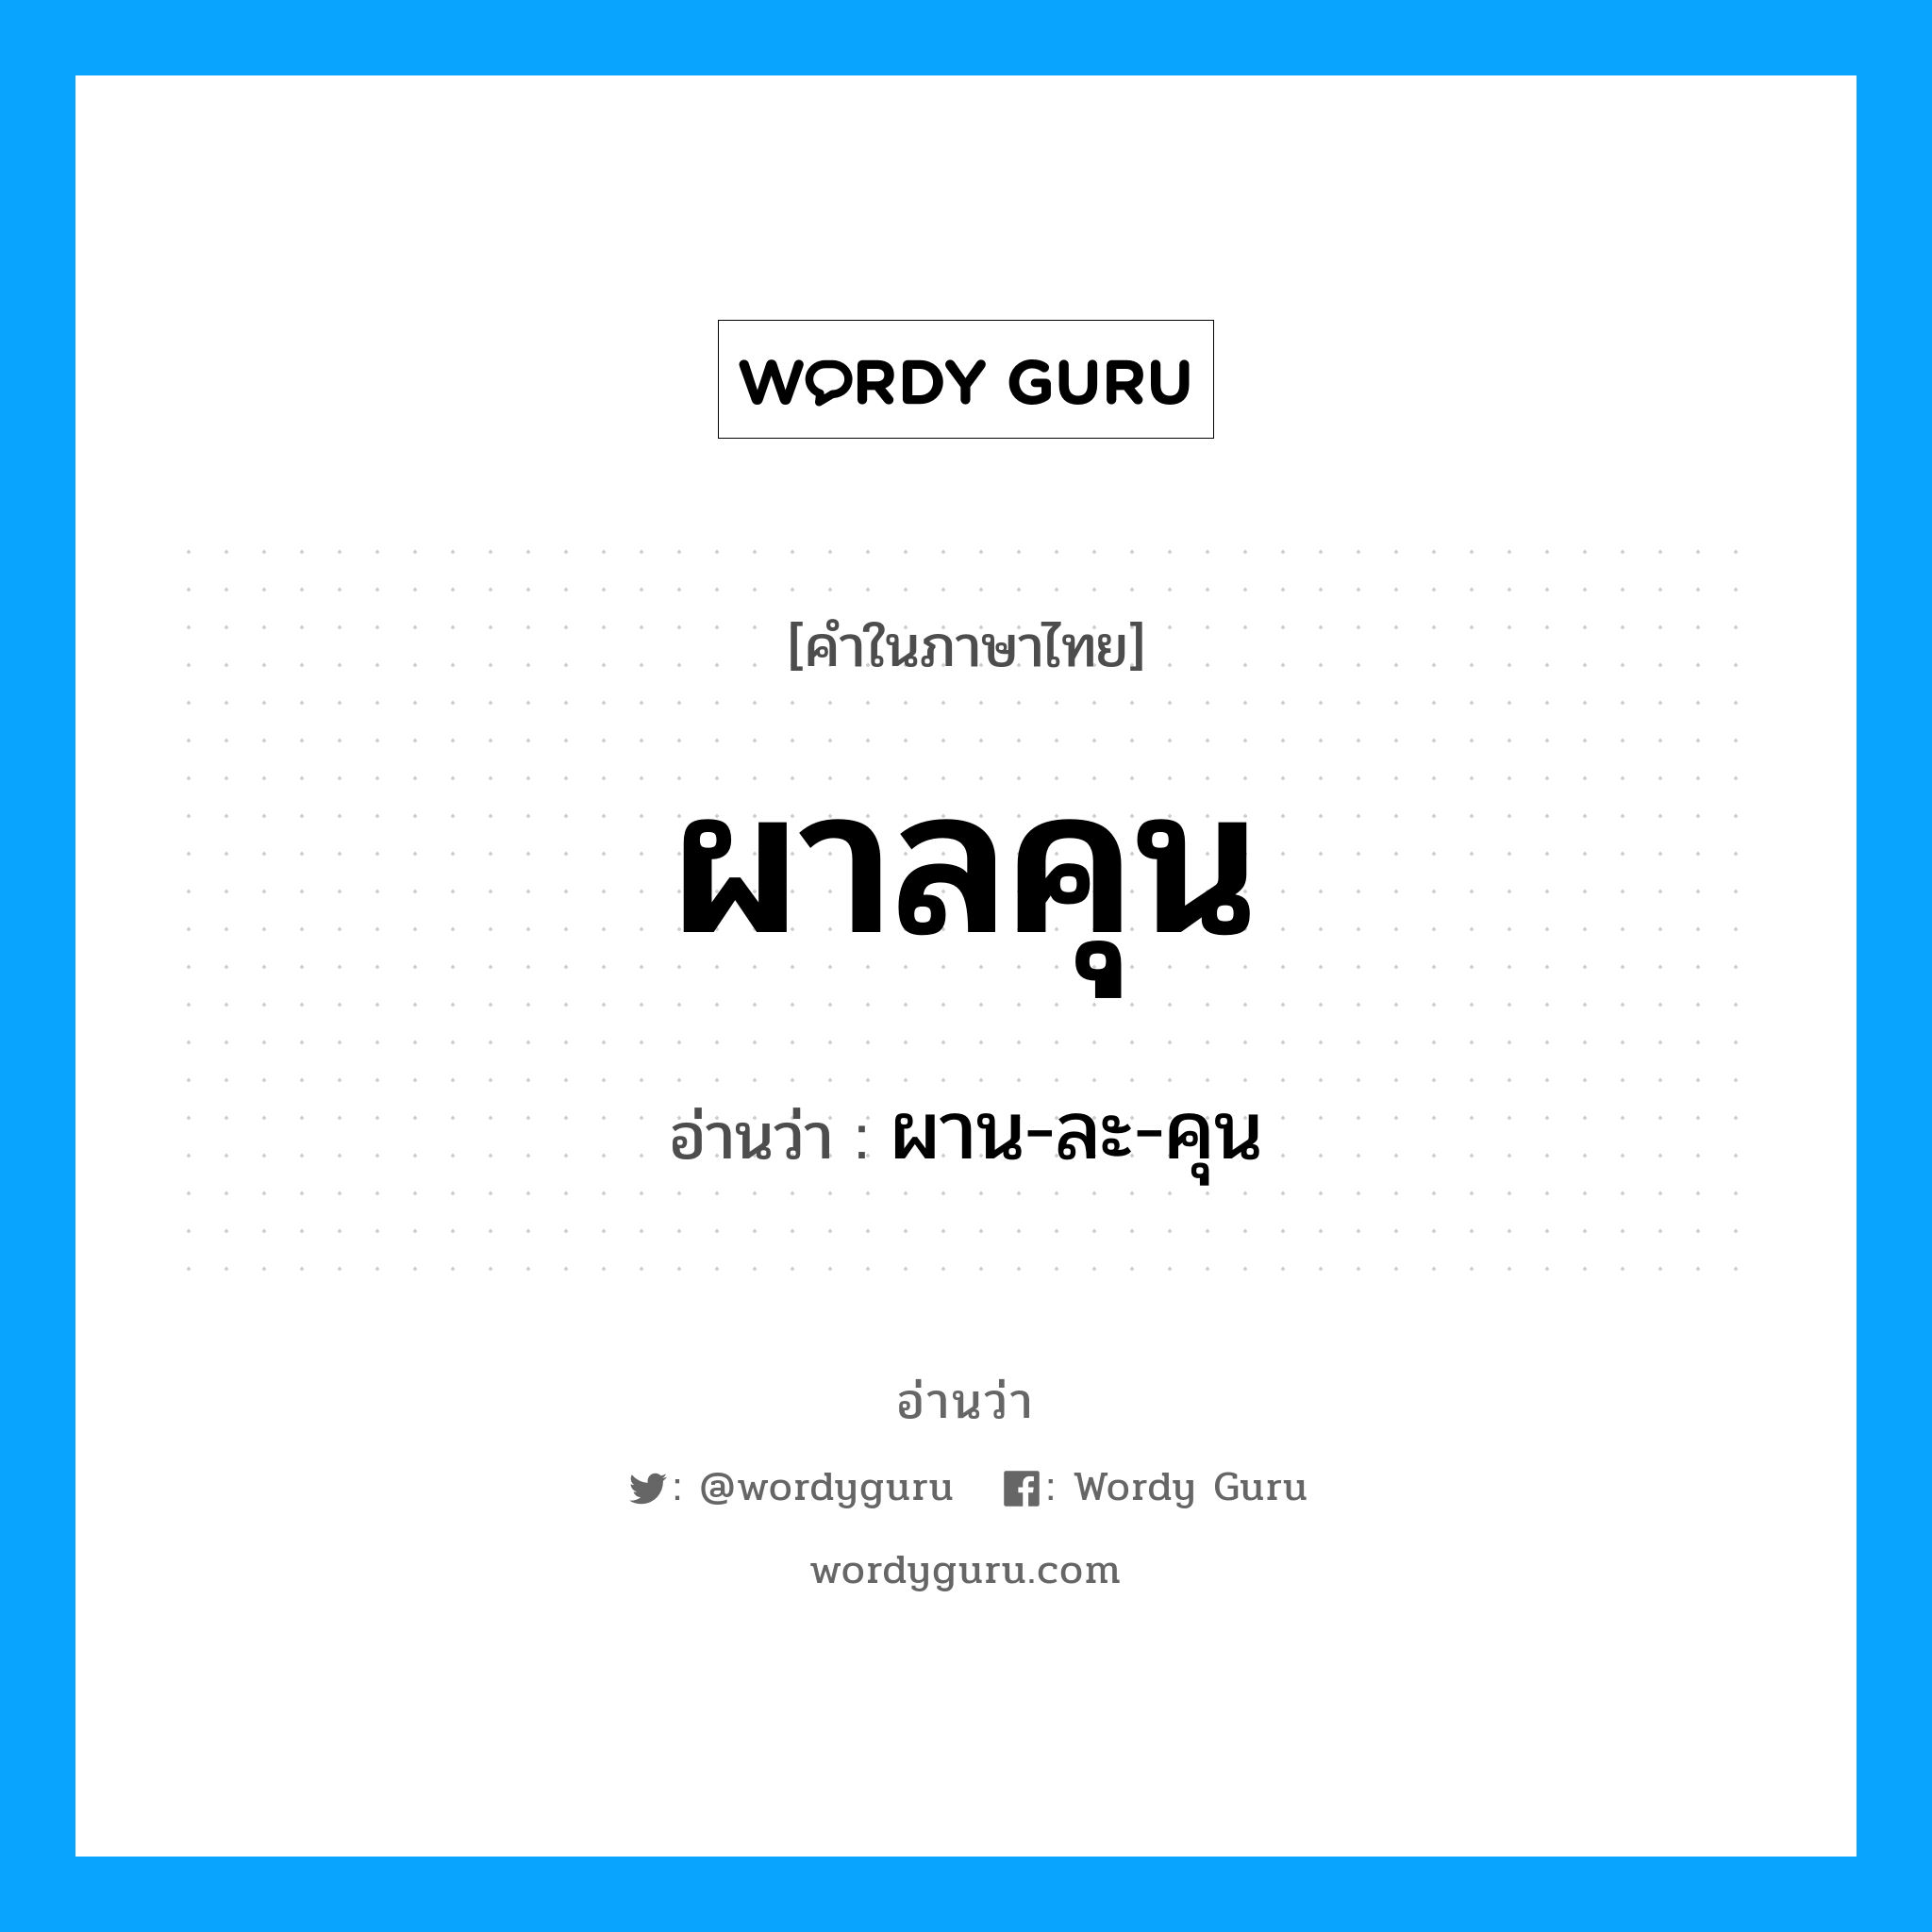 ผาลคุน อ่านว่า?, คำในภาษาไทย ผาลคุน อ่านว่า ผาน-ละ-คุน